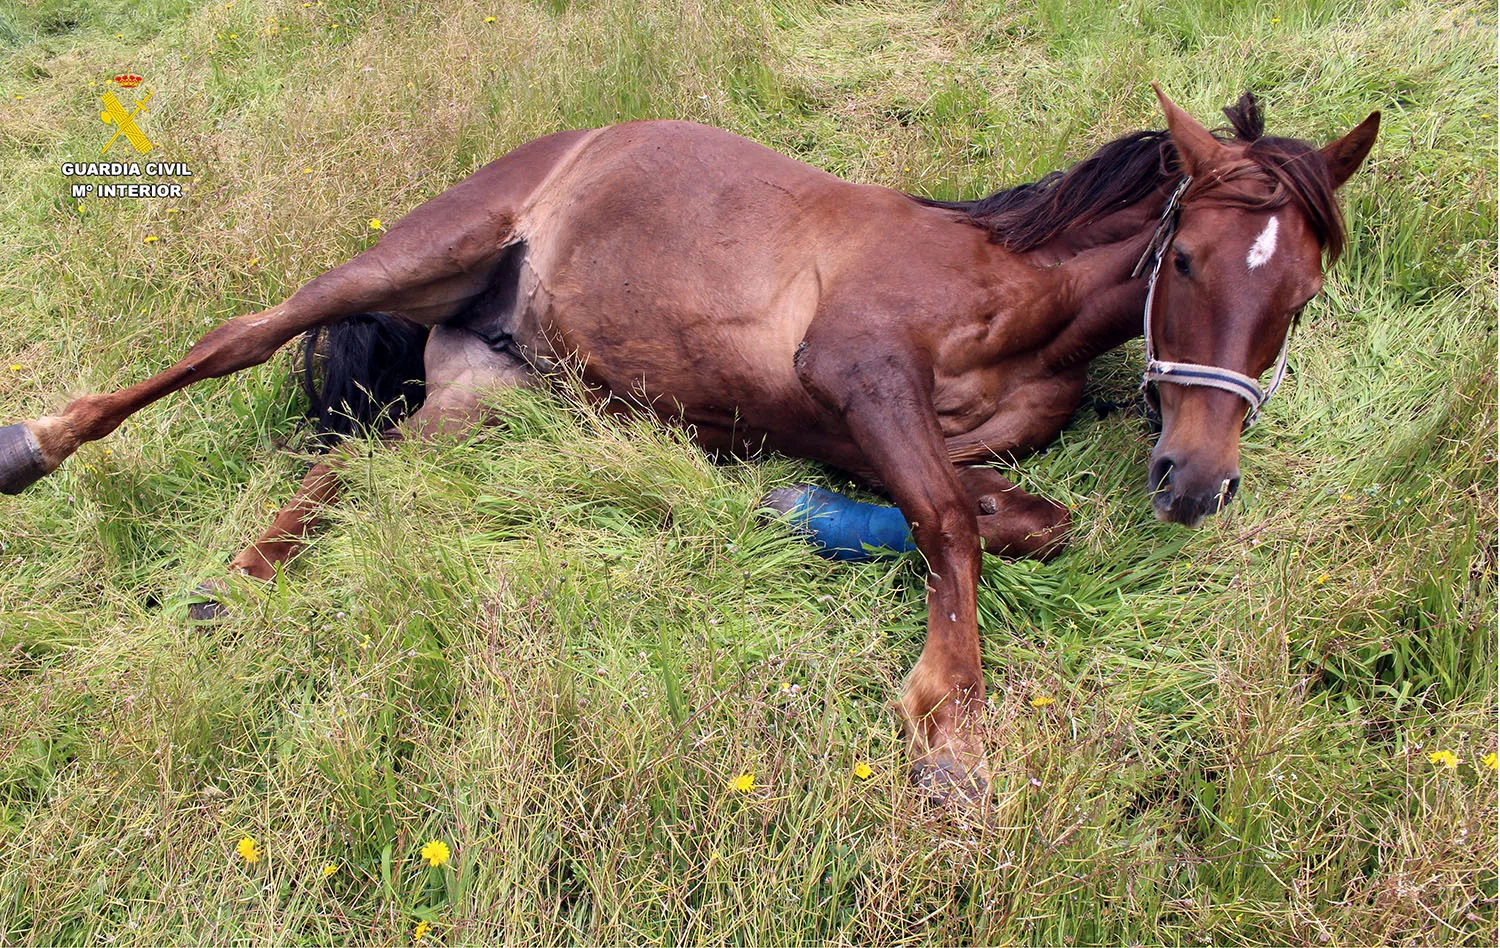 Investigado por delito de maltrato animal al maniatar a dos caballos para limitar su desplazamiento